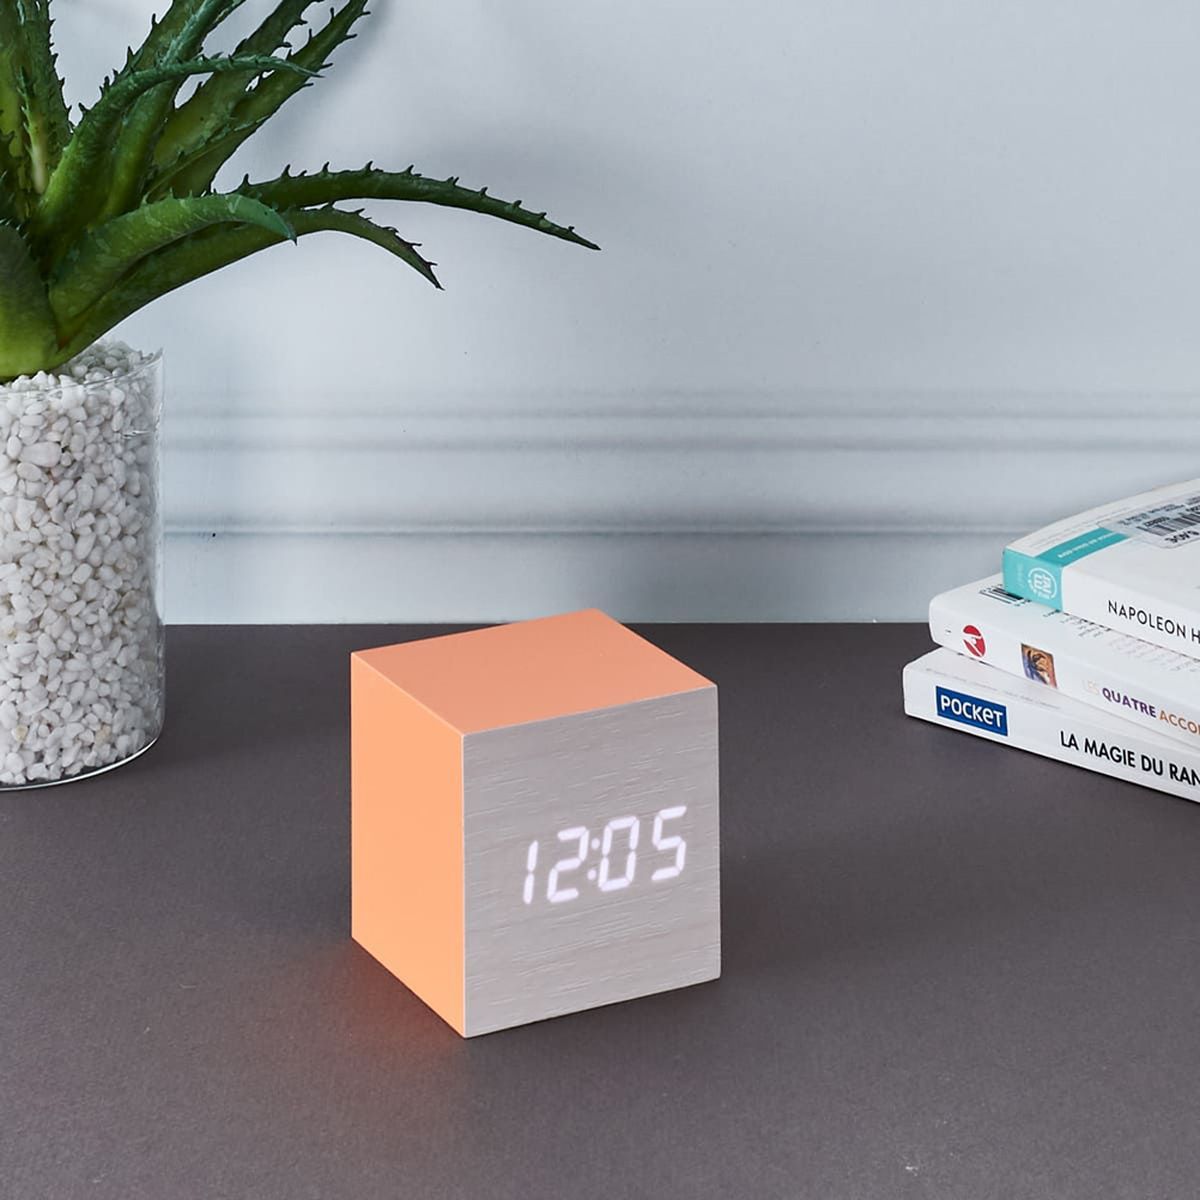 Small Orange cube alarm clock